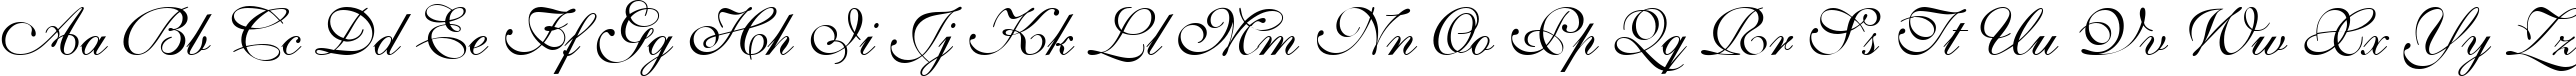 Пример написания английского алфавита шрифтом Shelley Volante BT